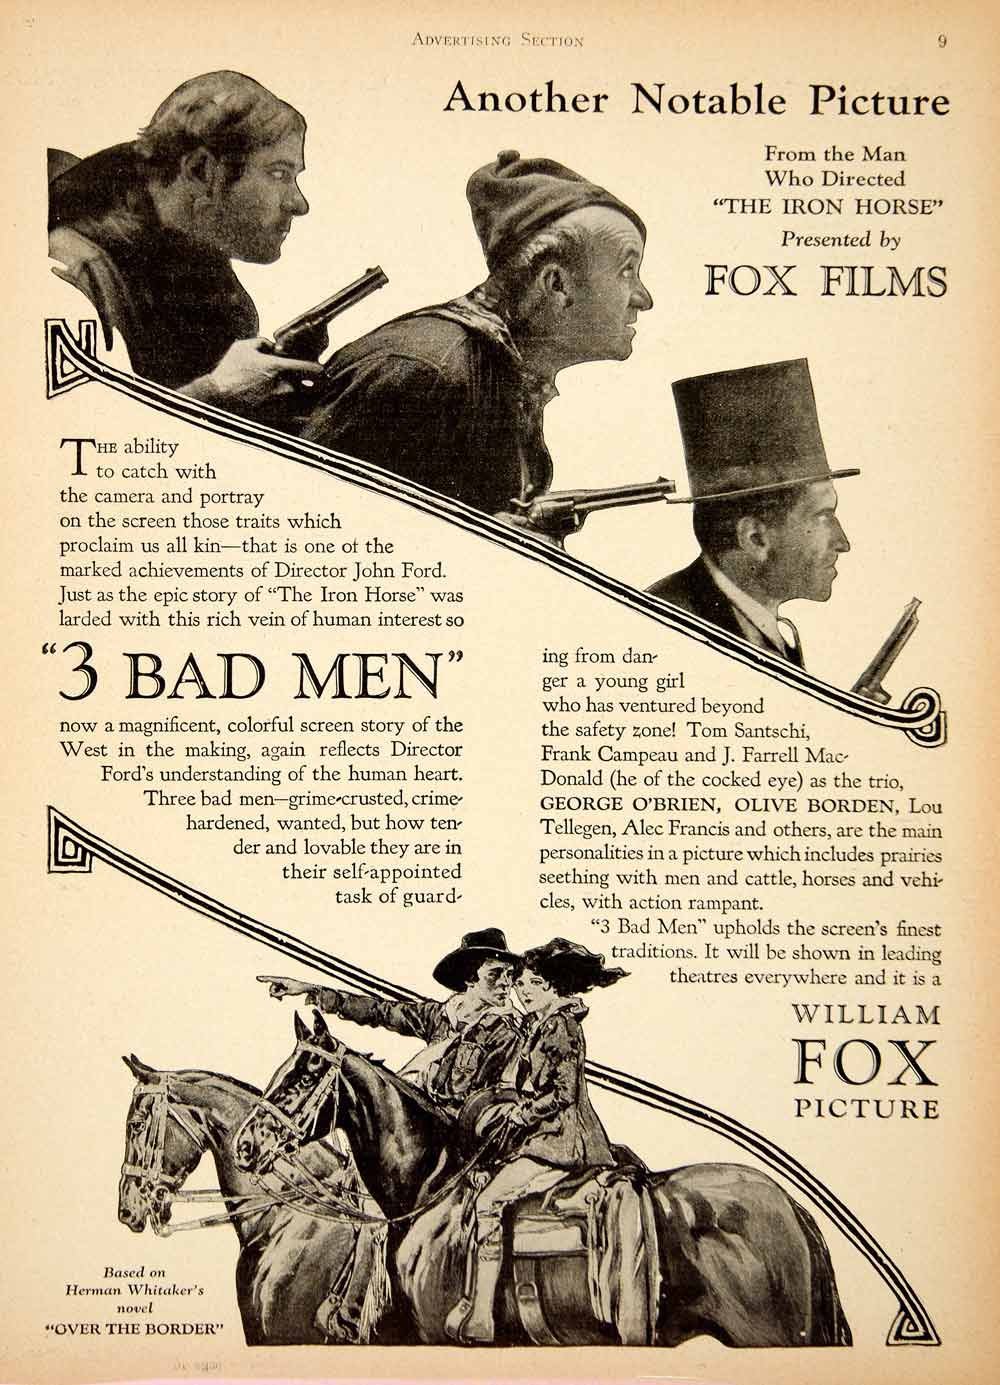 Frank Campeau, J. Farrell MacDonald and Tom Santschi in 3 Bad Men (1926)